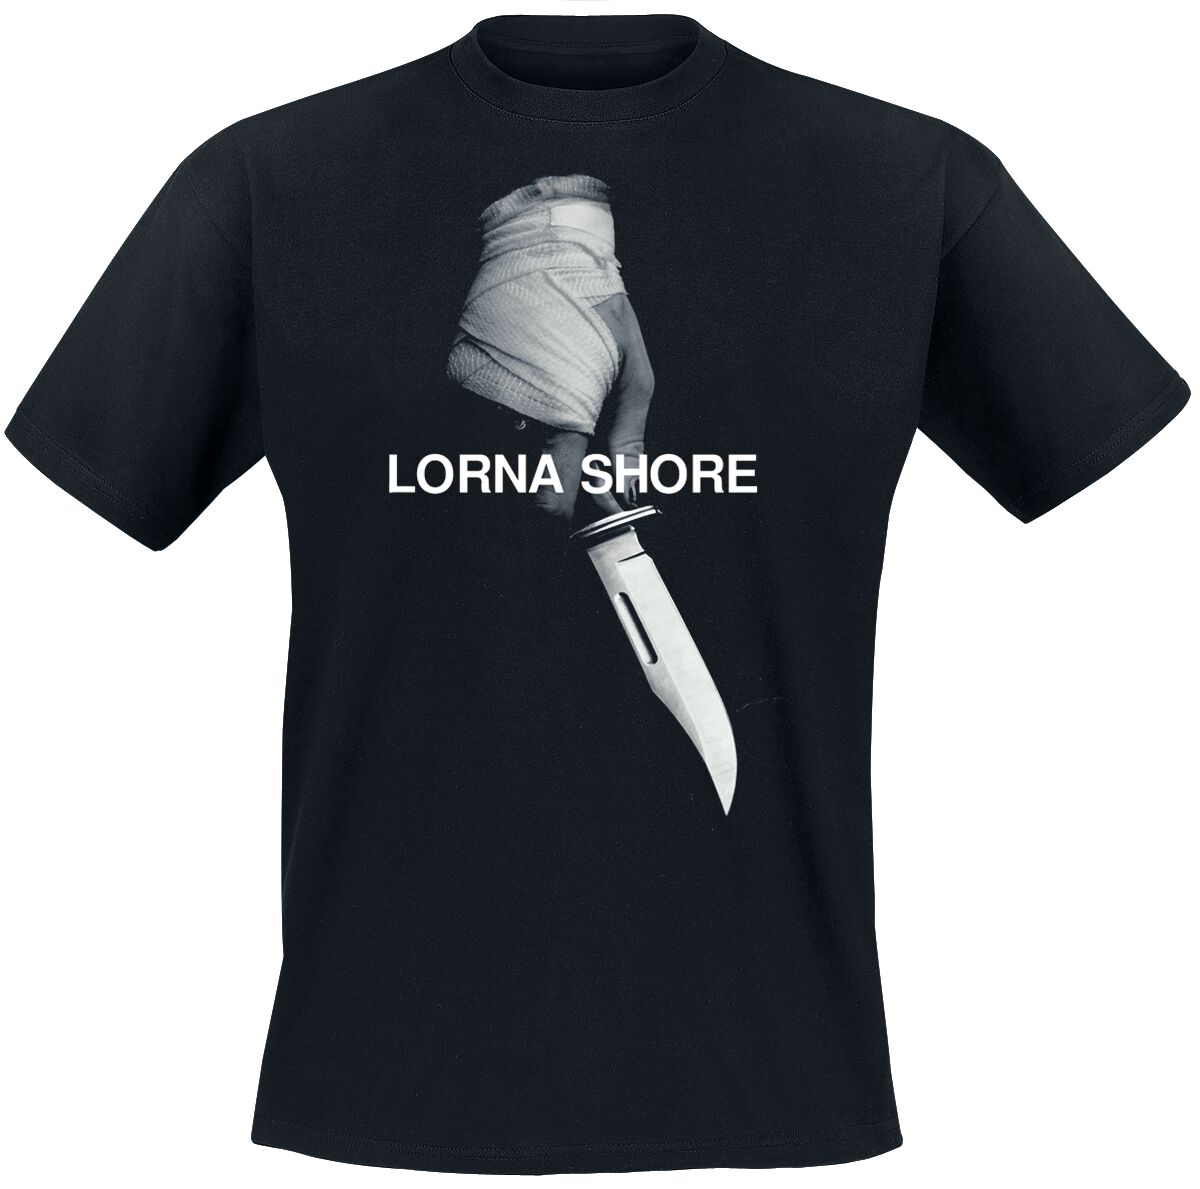 Lorna Shore T-Shirt - Pain remains - S bis XXL - für Männer - Größe S - schwarz  - Lizenziertes Merchandise!